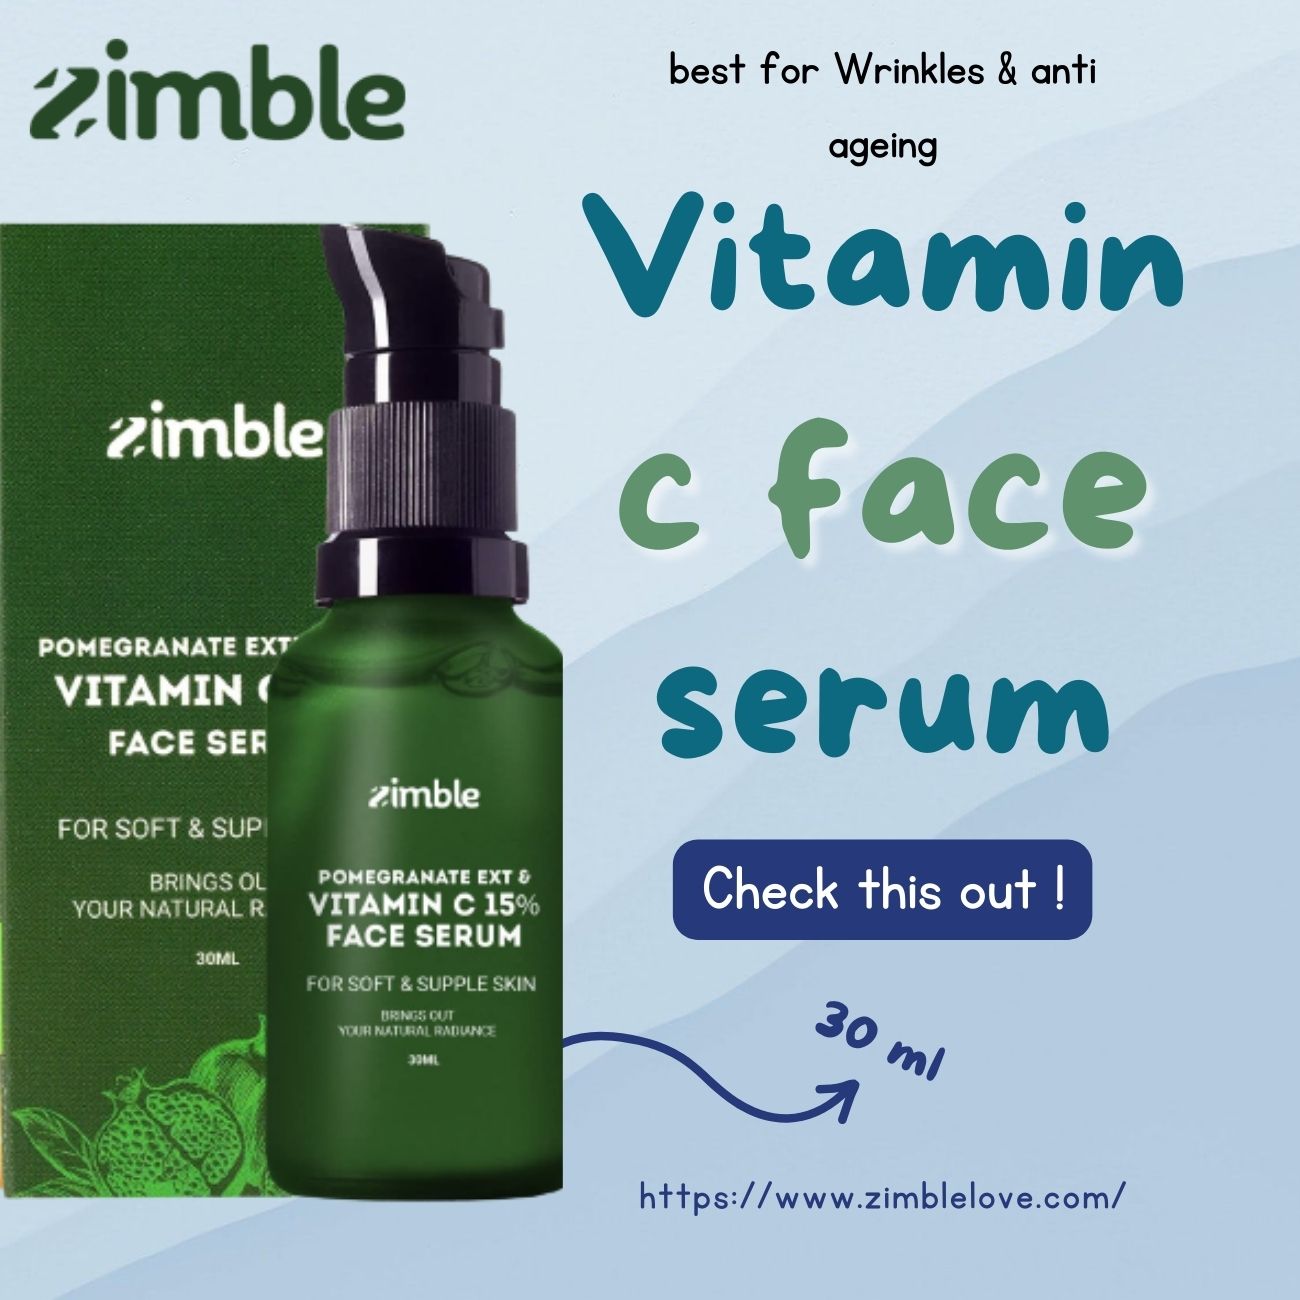 Vitamin c face serum